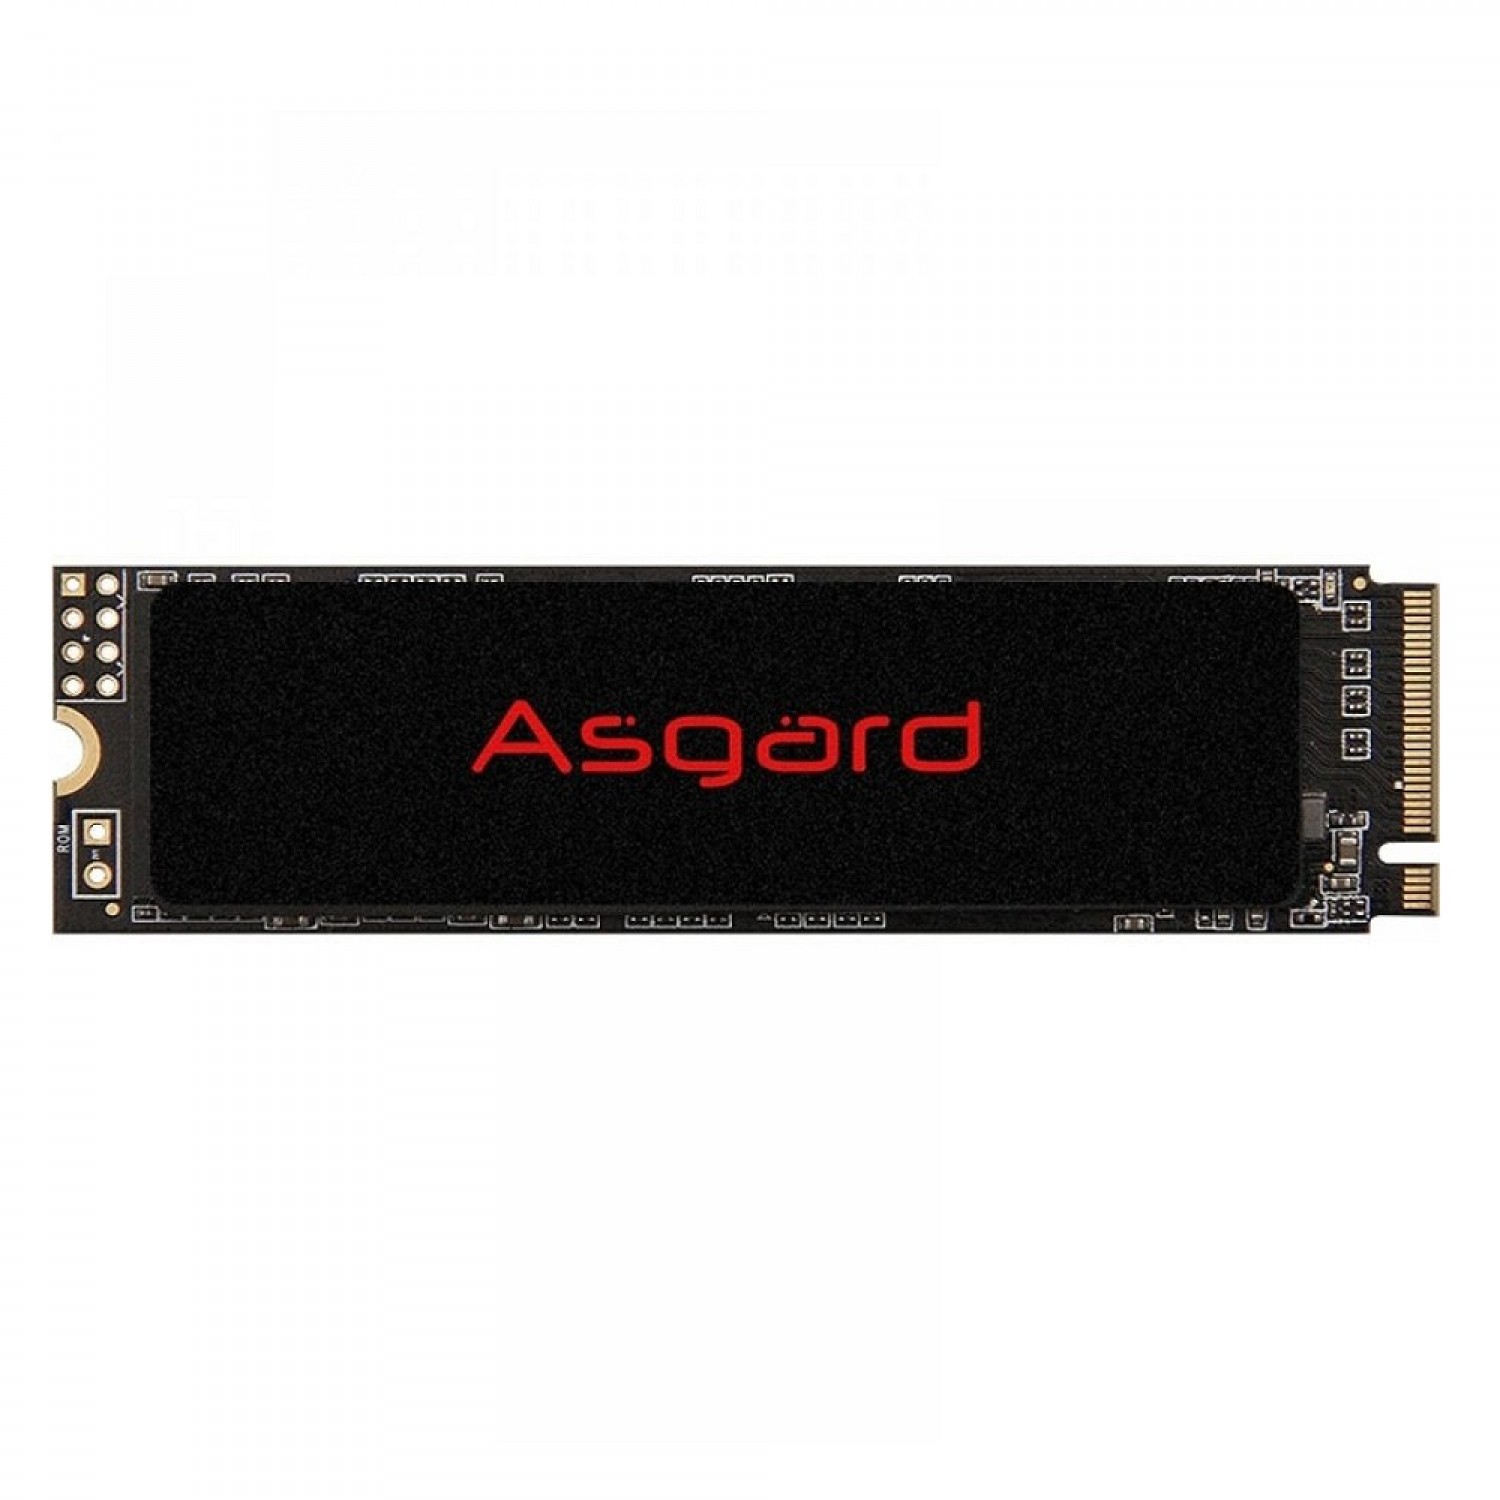 حافظه اس اس دی Asgard AN2 500GB